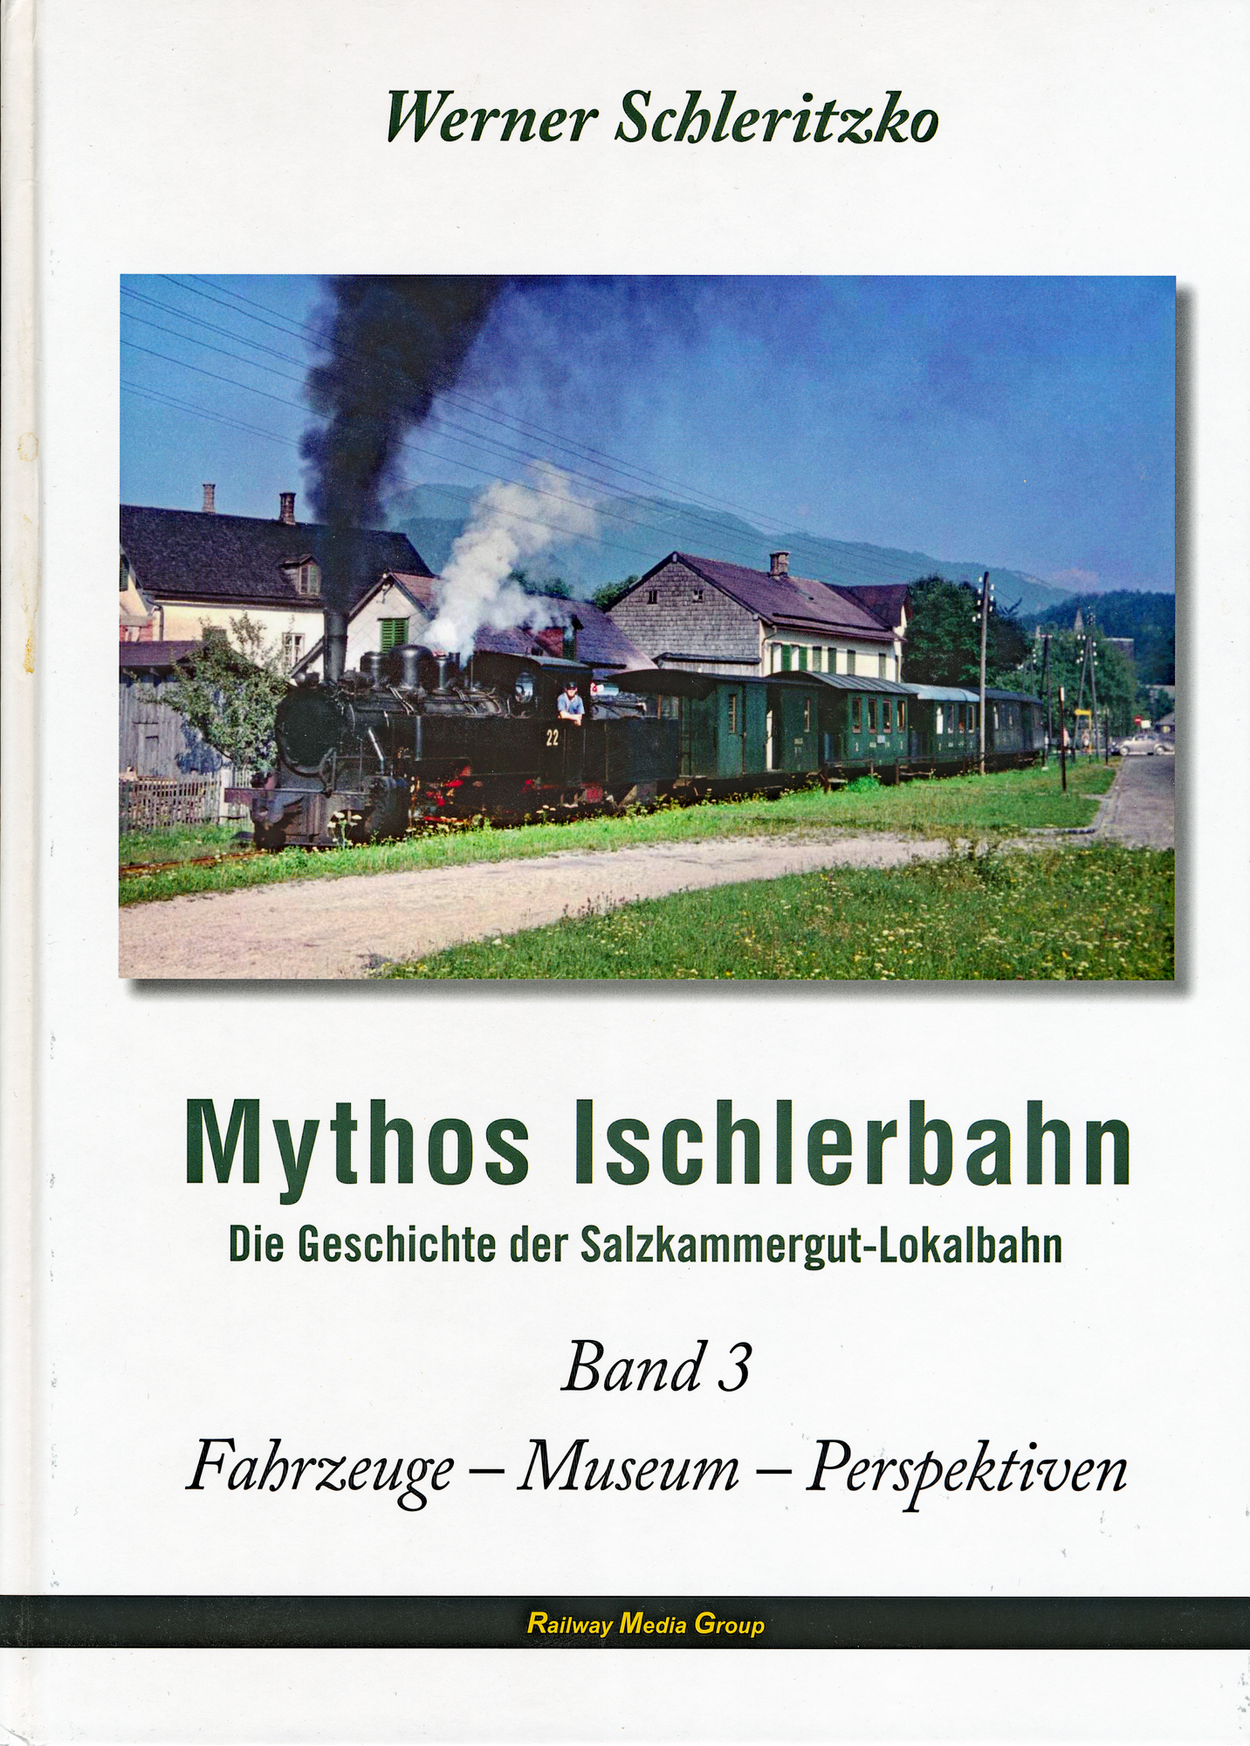 Buchreihe von Werner Schleritzko "Mythos Ischlerbahn"